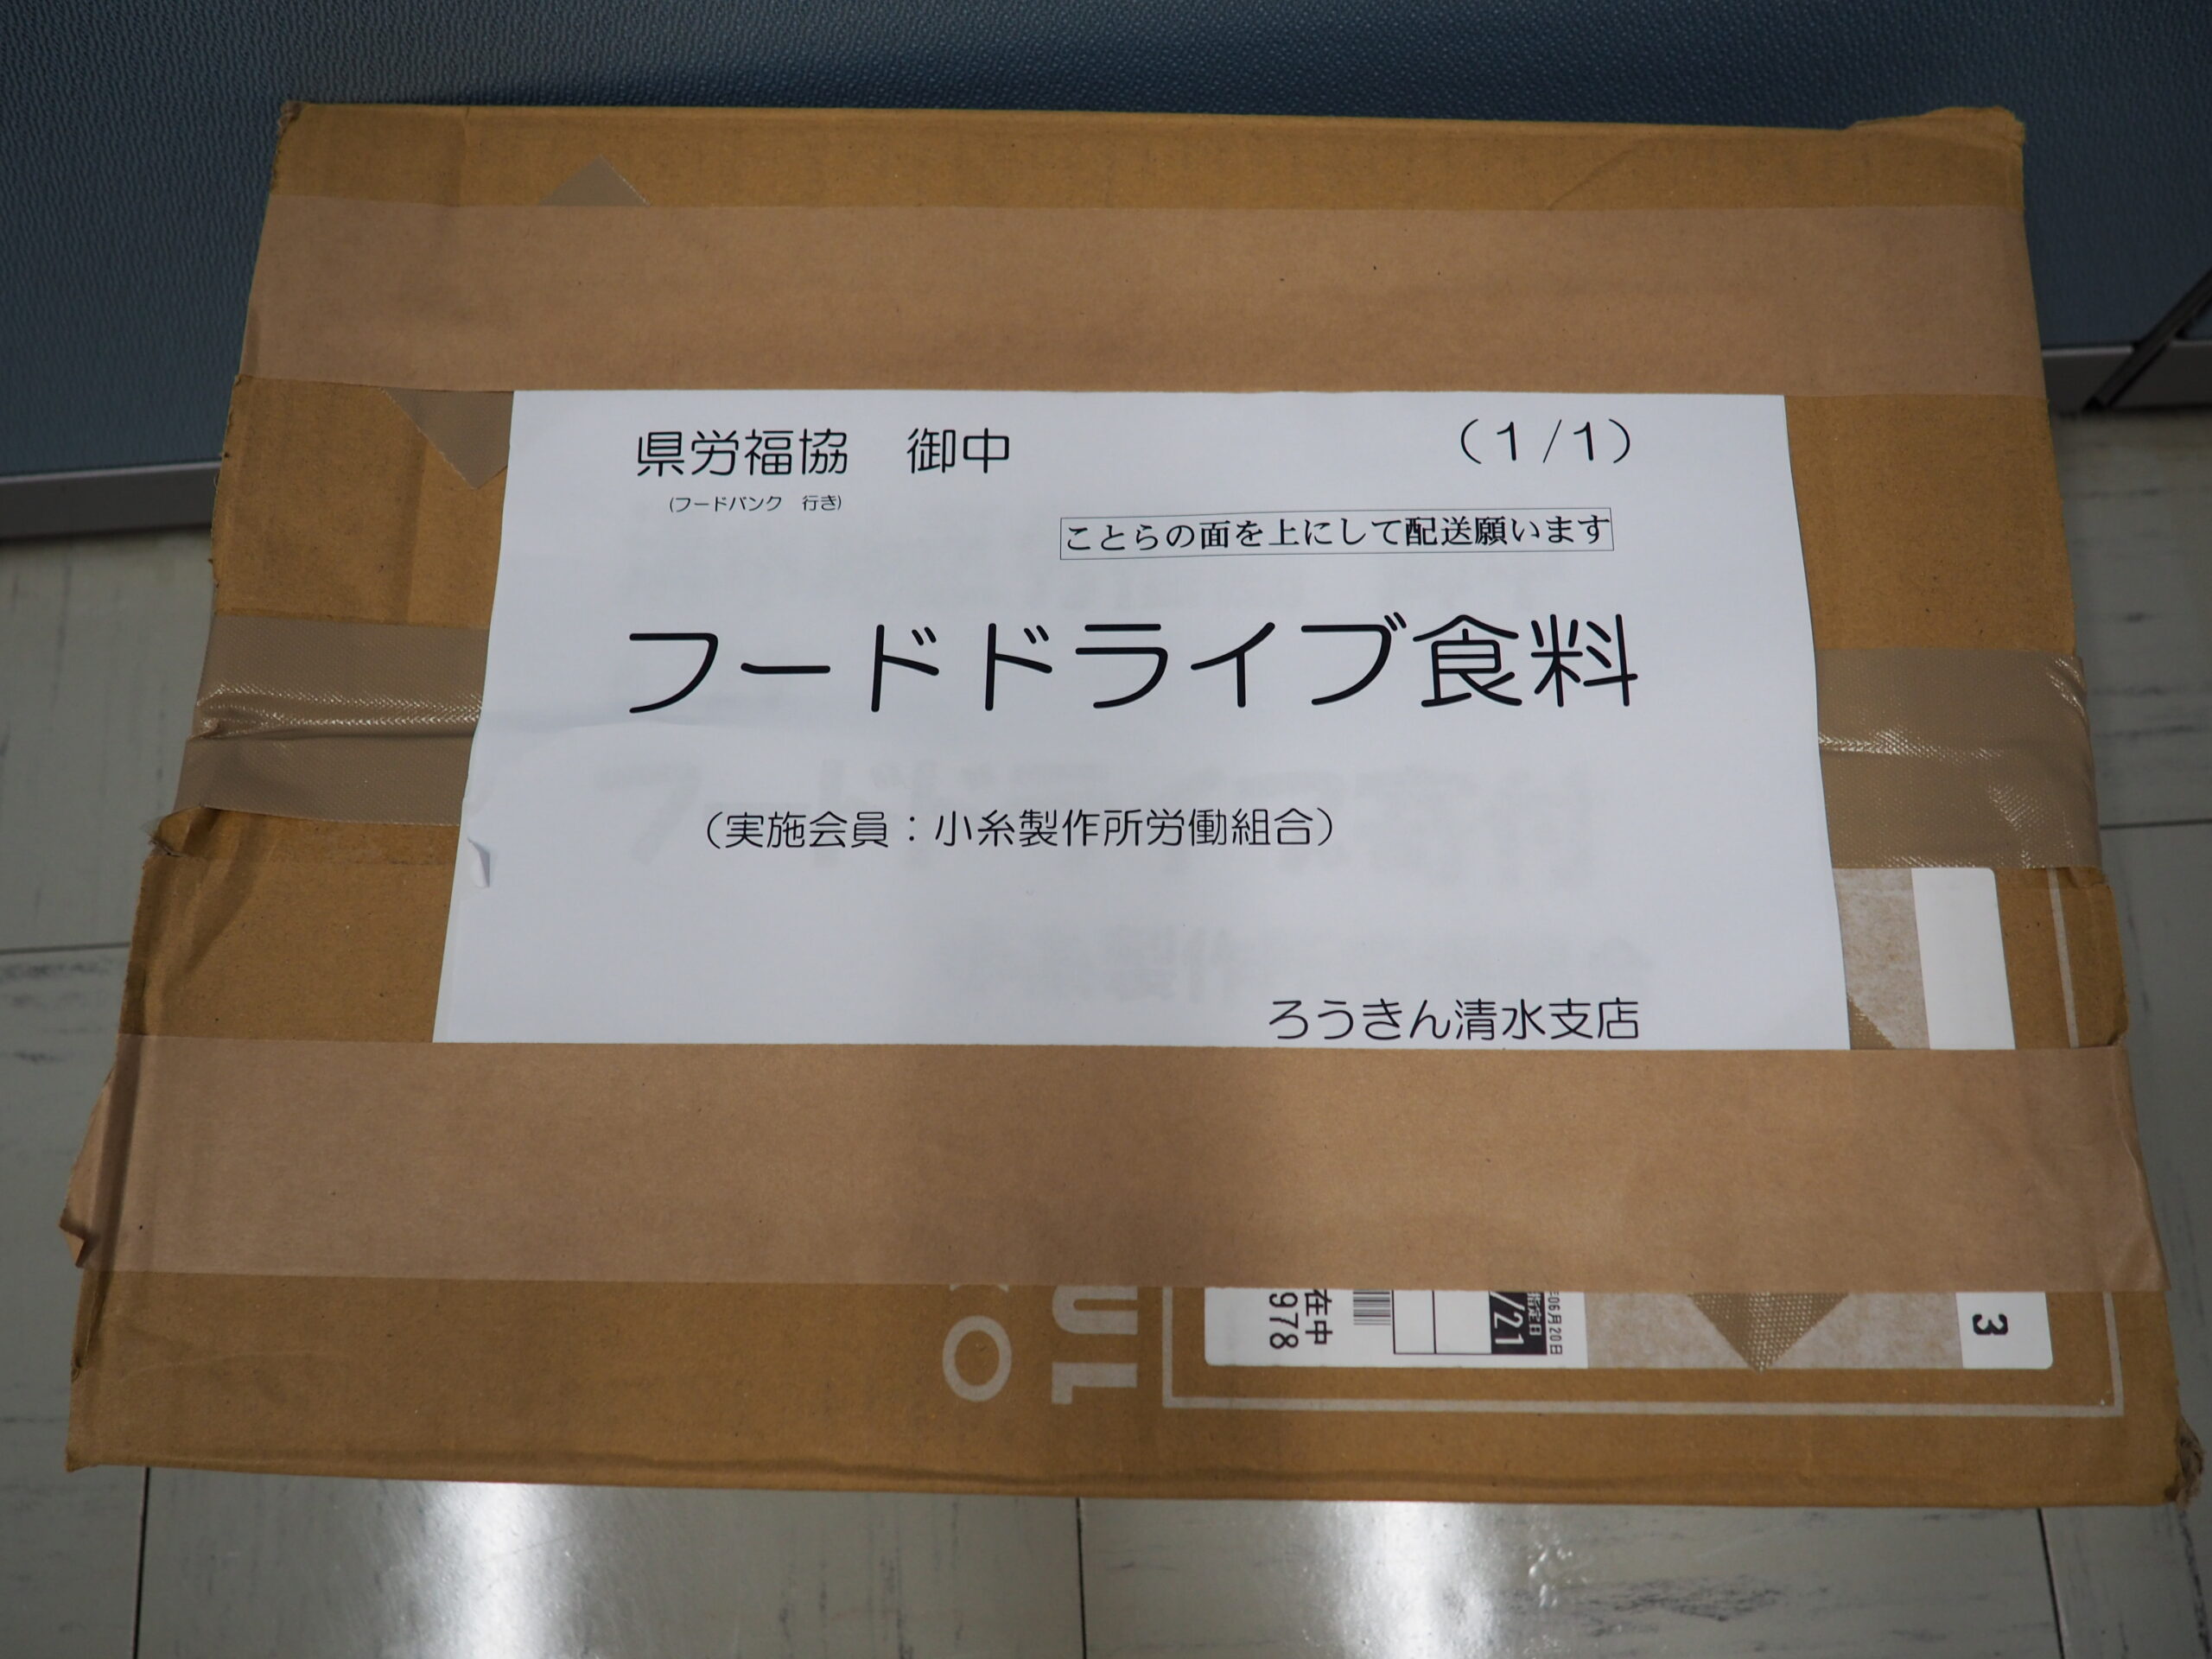 小糸製作所労働組合様・磐田地区労福協様から食品を提供いただきました。